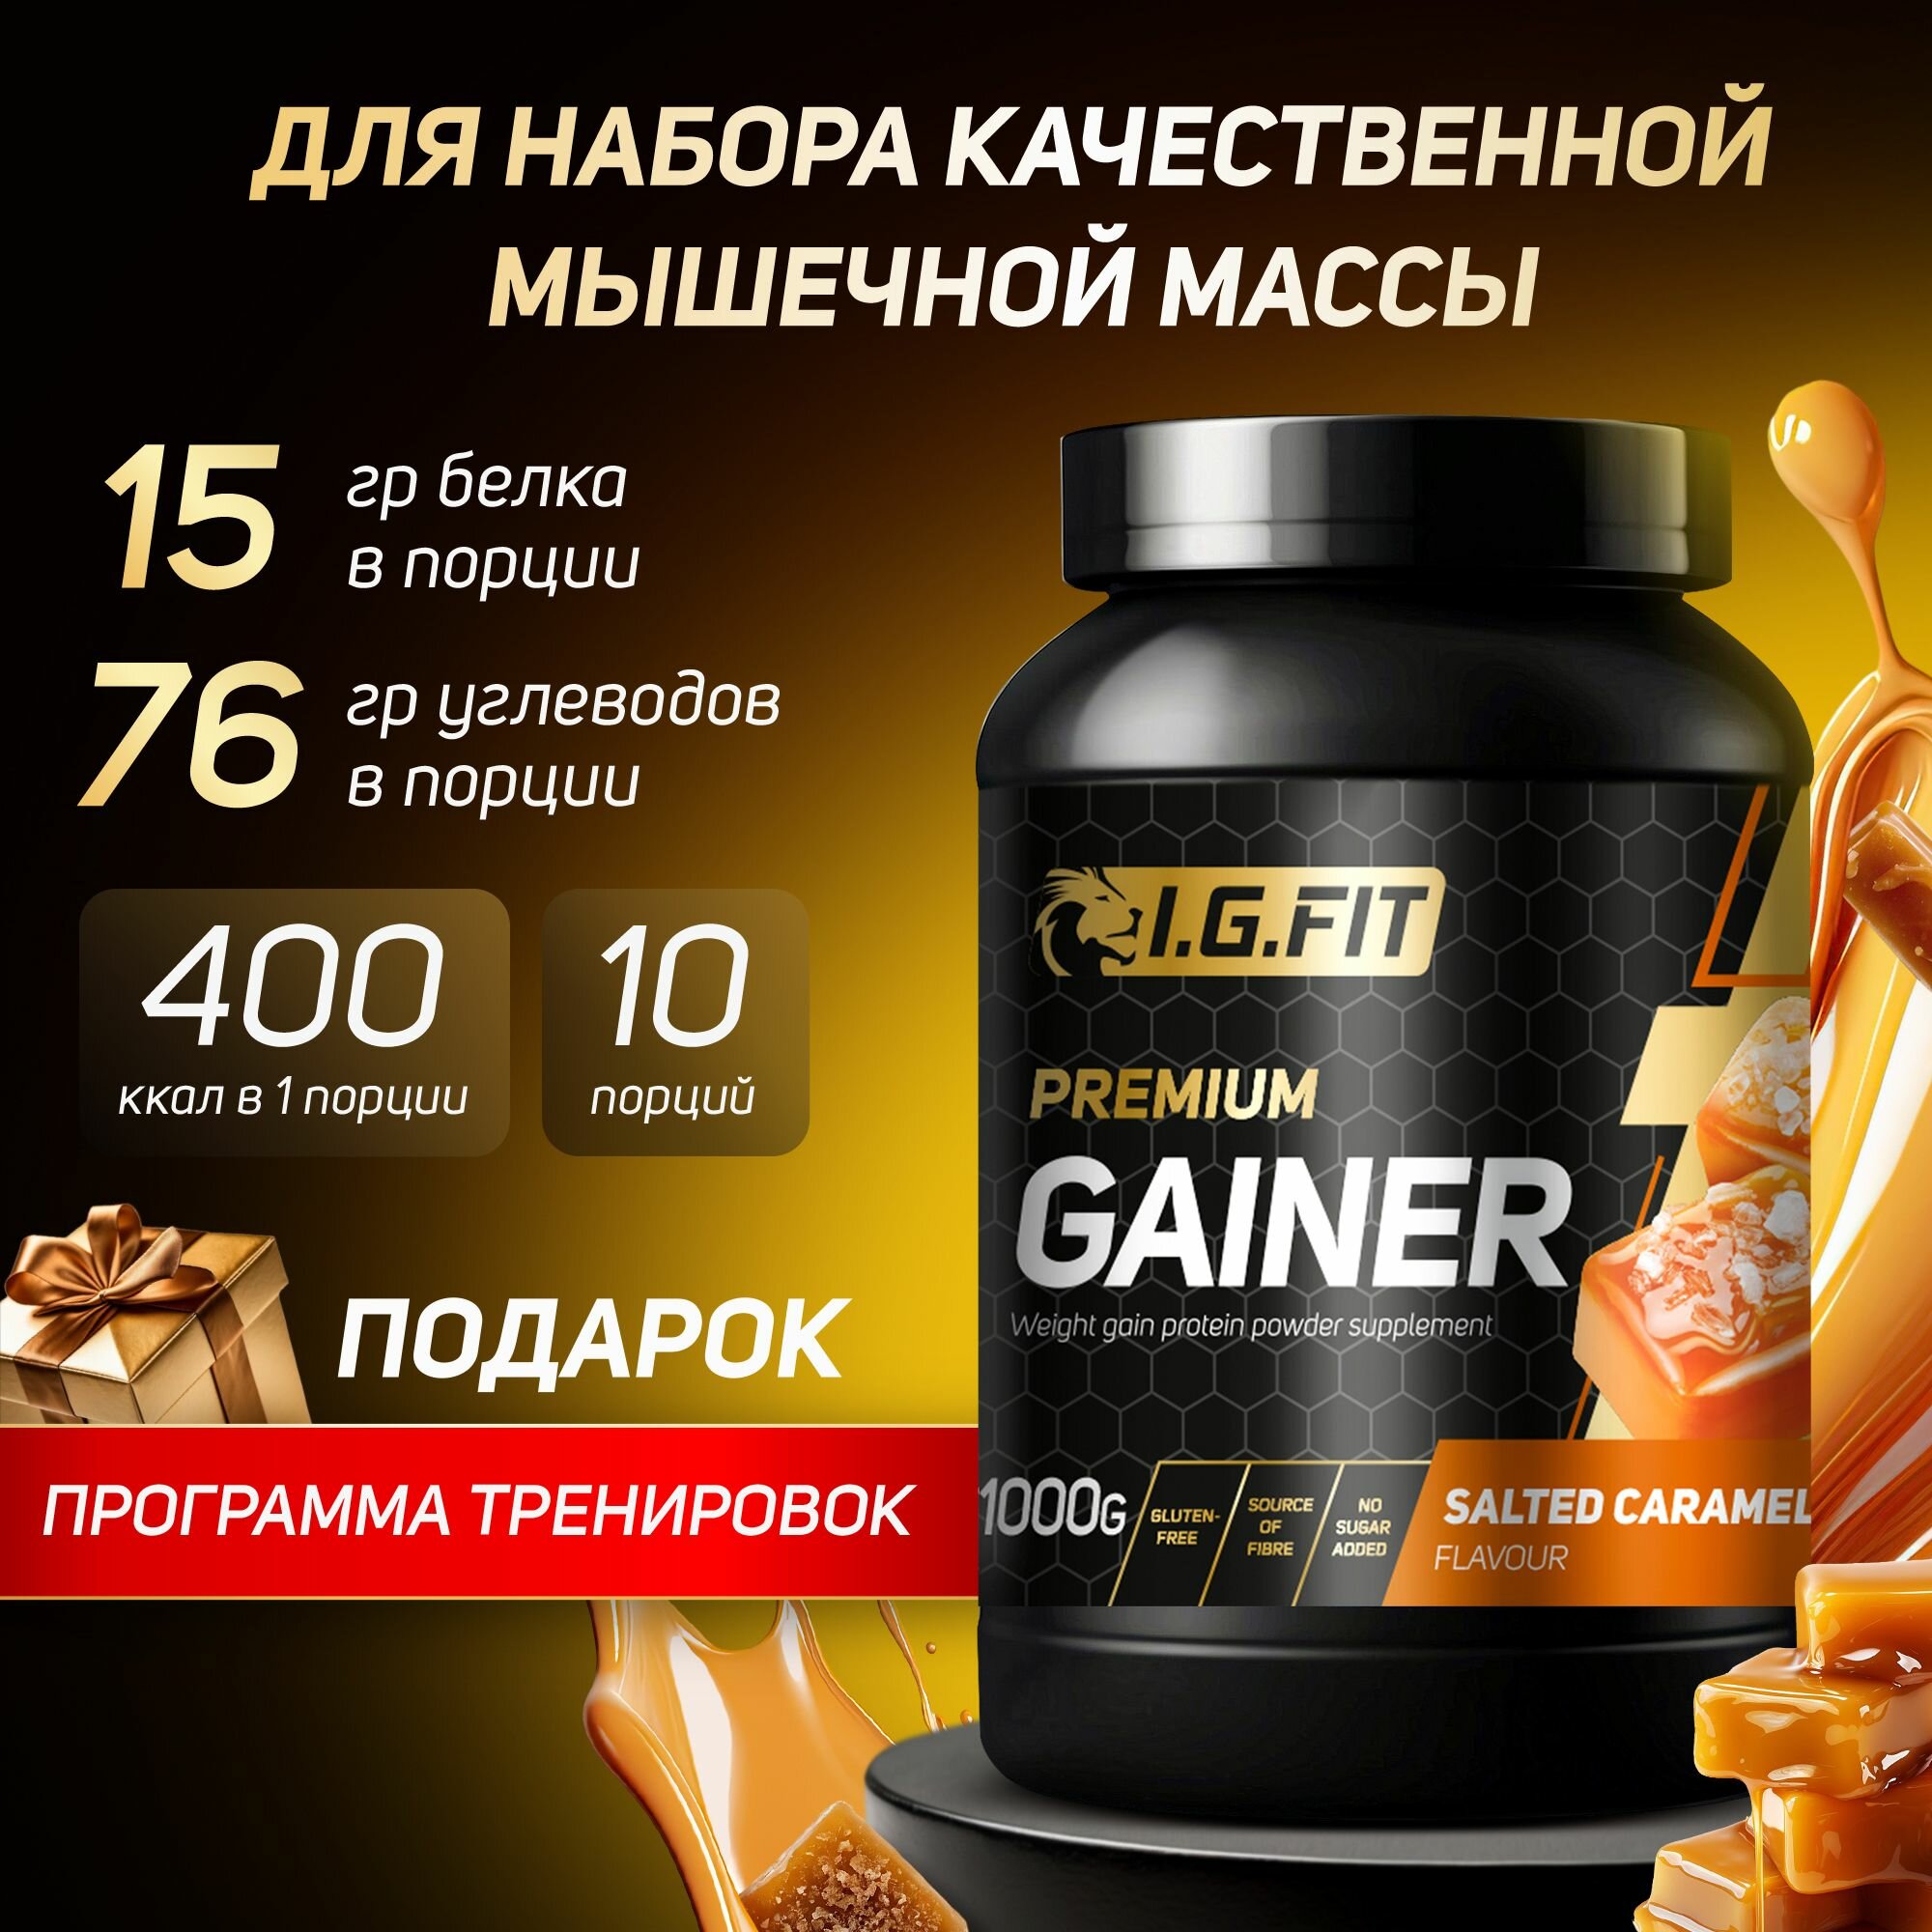 Гейнер I.G.FIT, соленая карамель, 1000 г (для набора мышечный массы, для похудения, для спорта, с мерной ложкой)